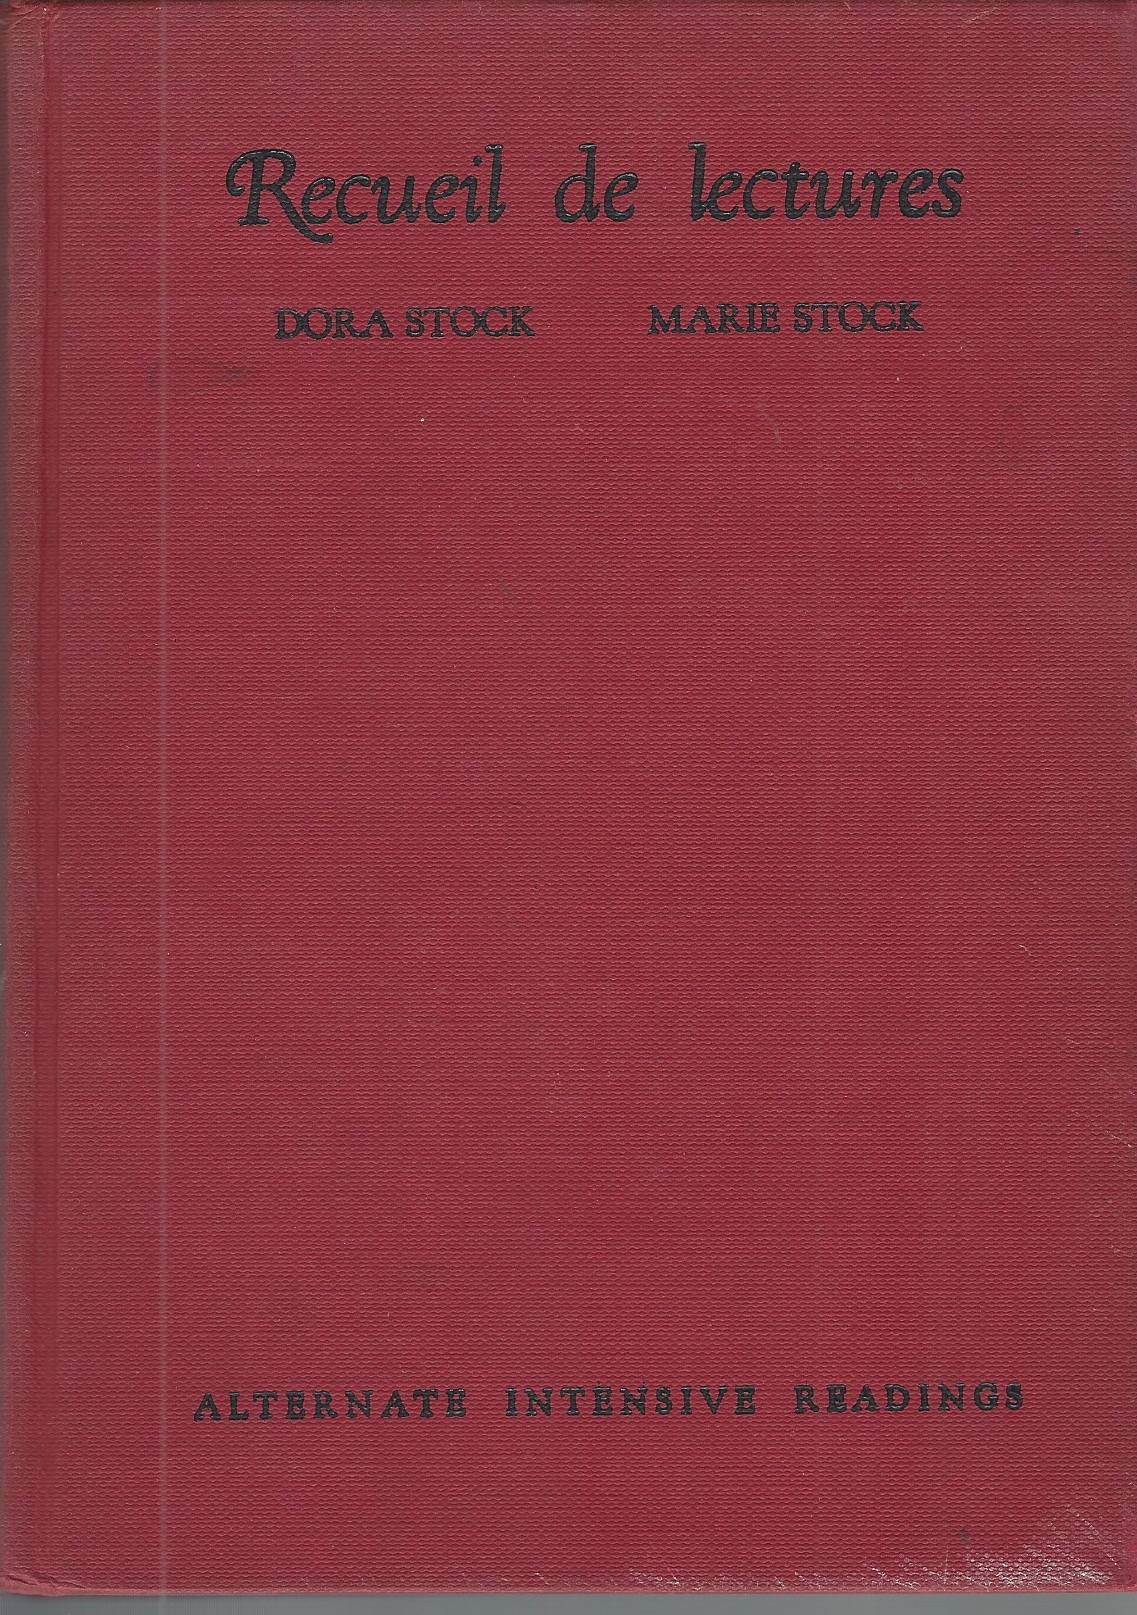 STOCK DORA, STOCK MARIE - Recueil de Lectures